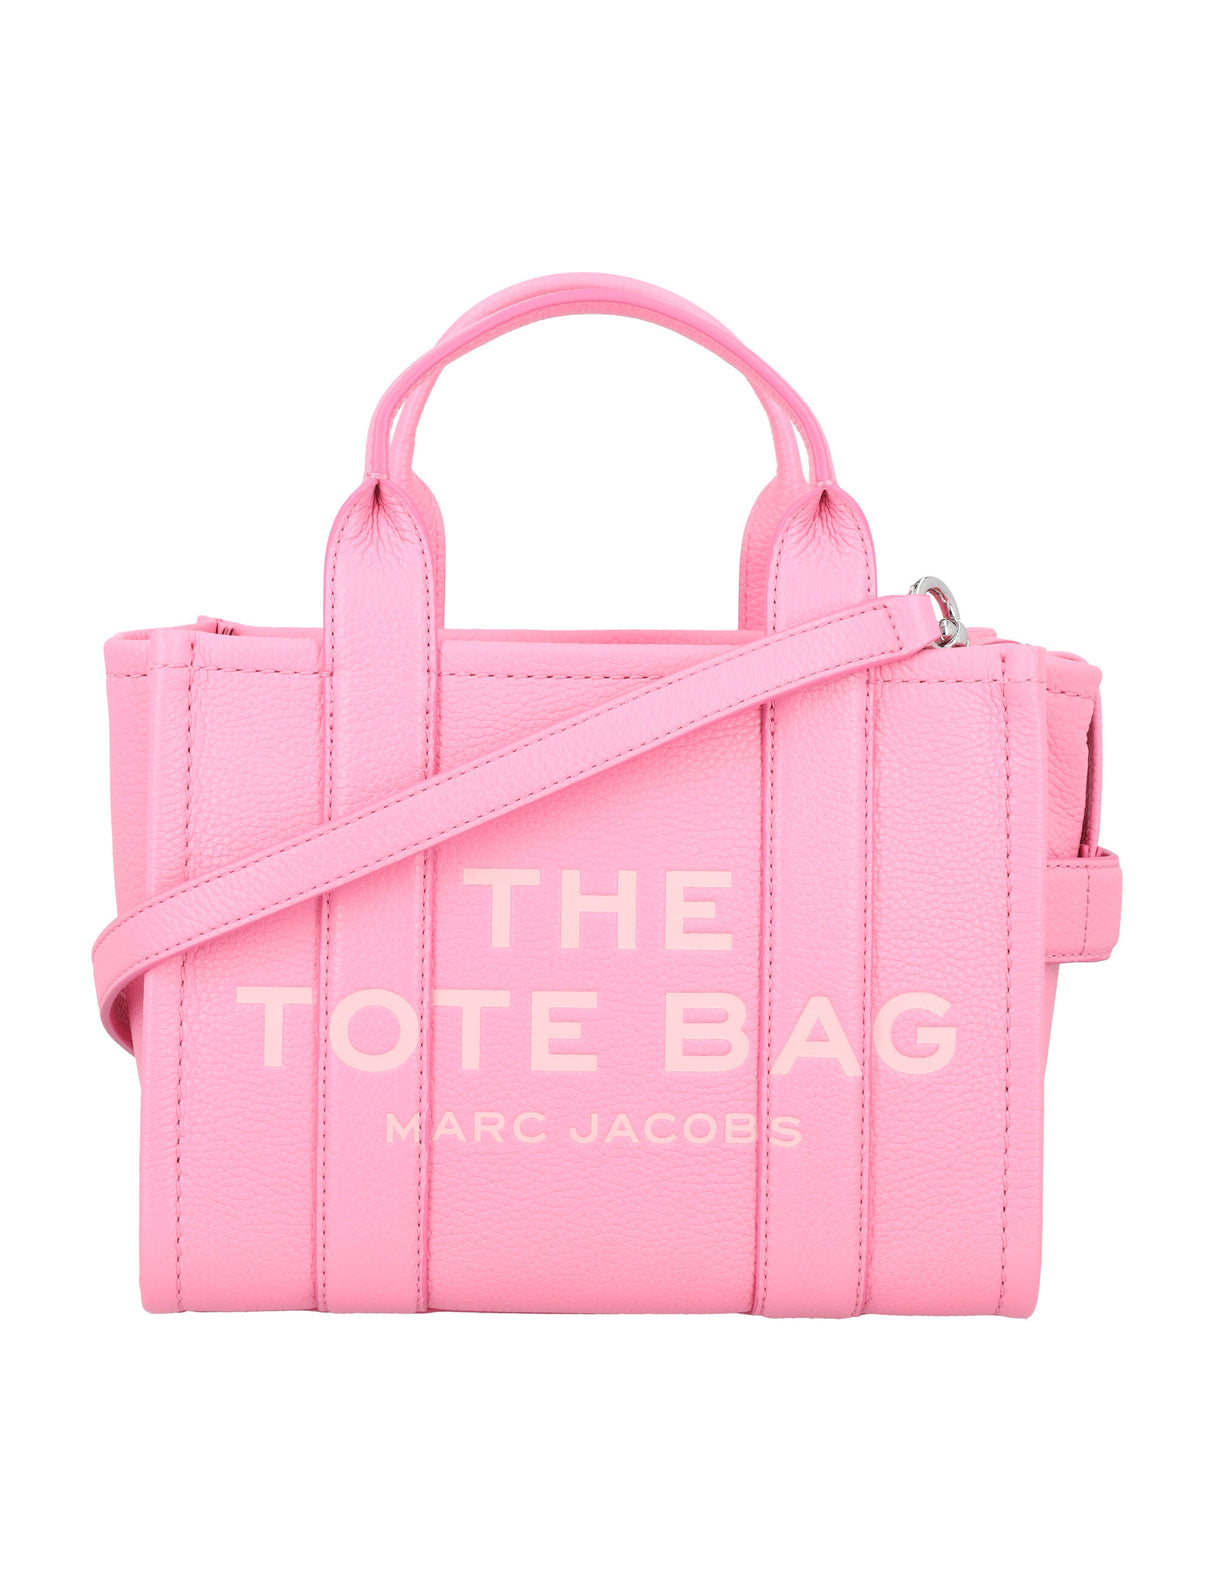 Túi xách nhỏ da lộn màu hồng nhạt Petal Pink cho phụ nữ